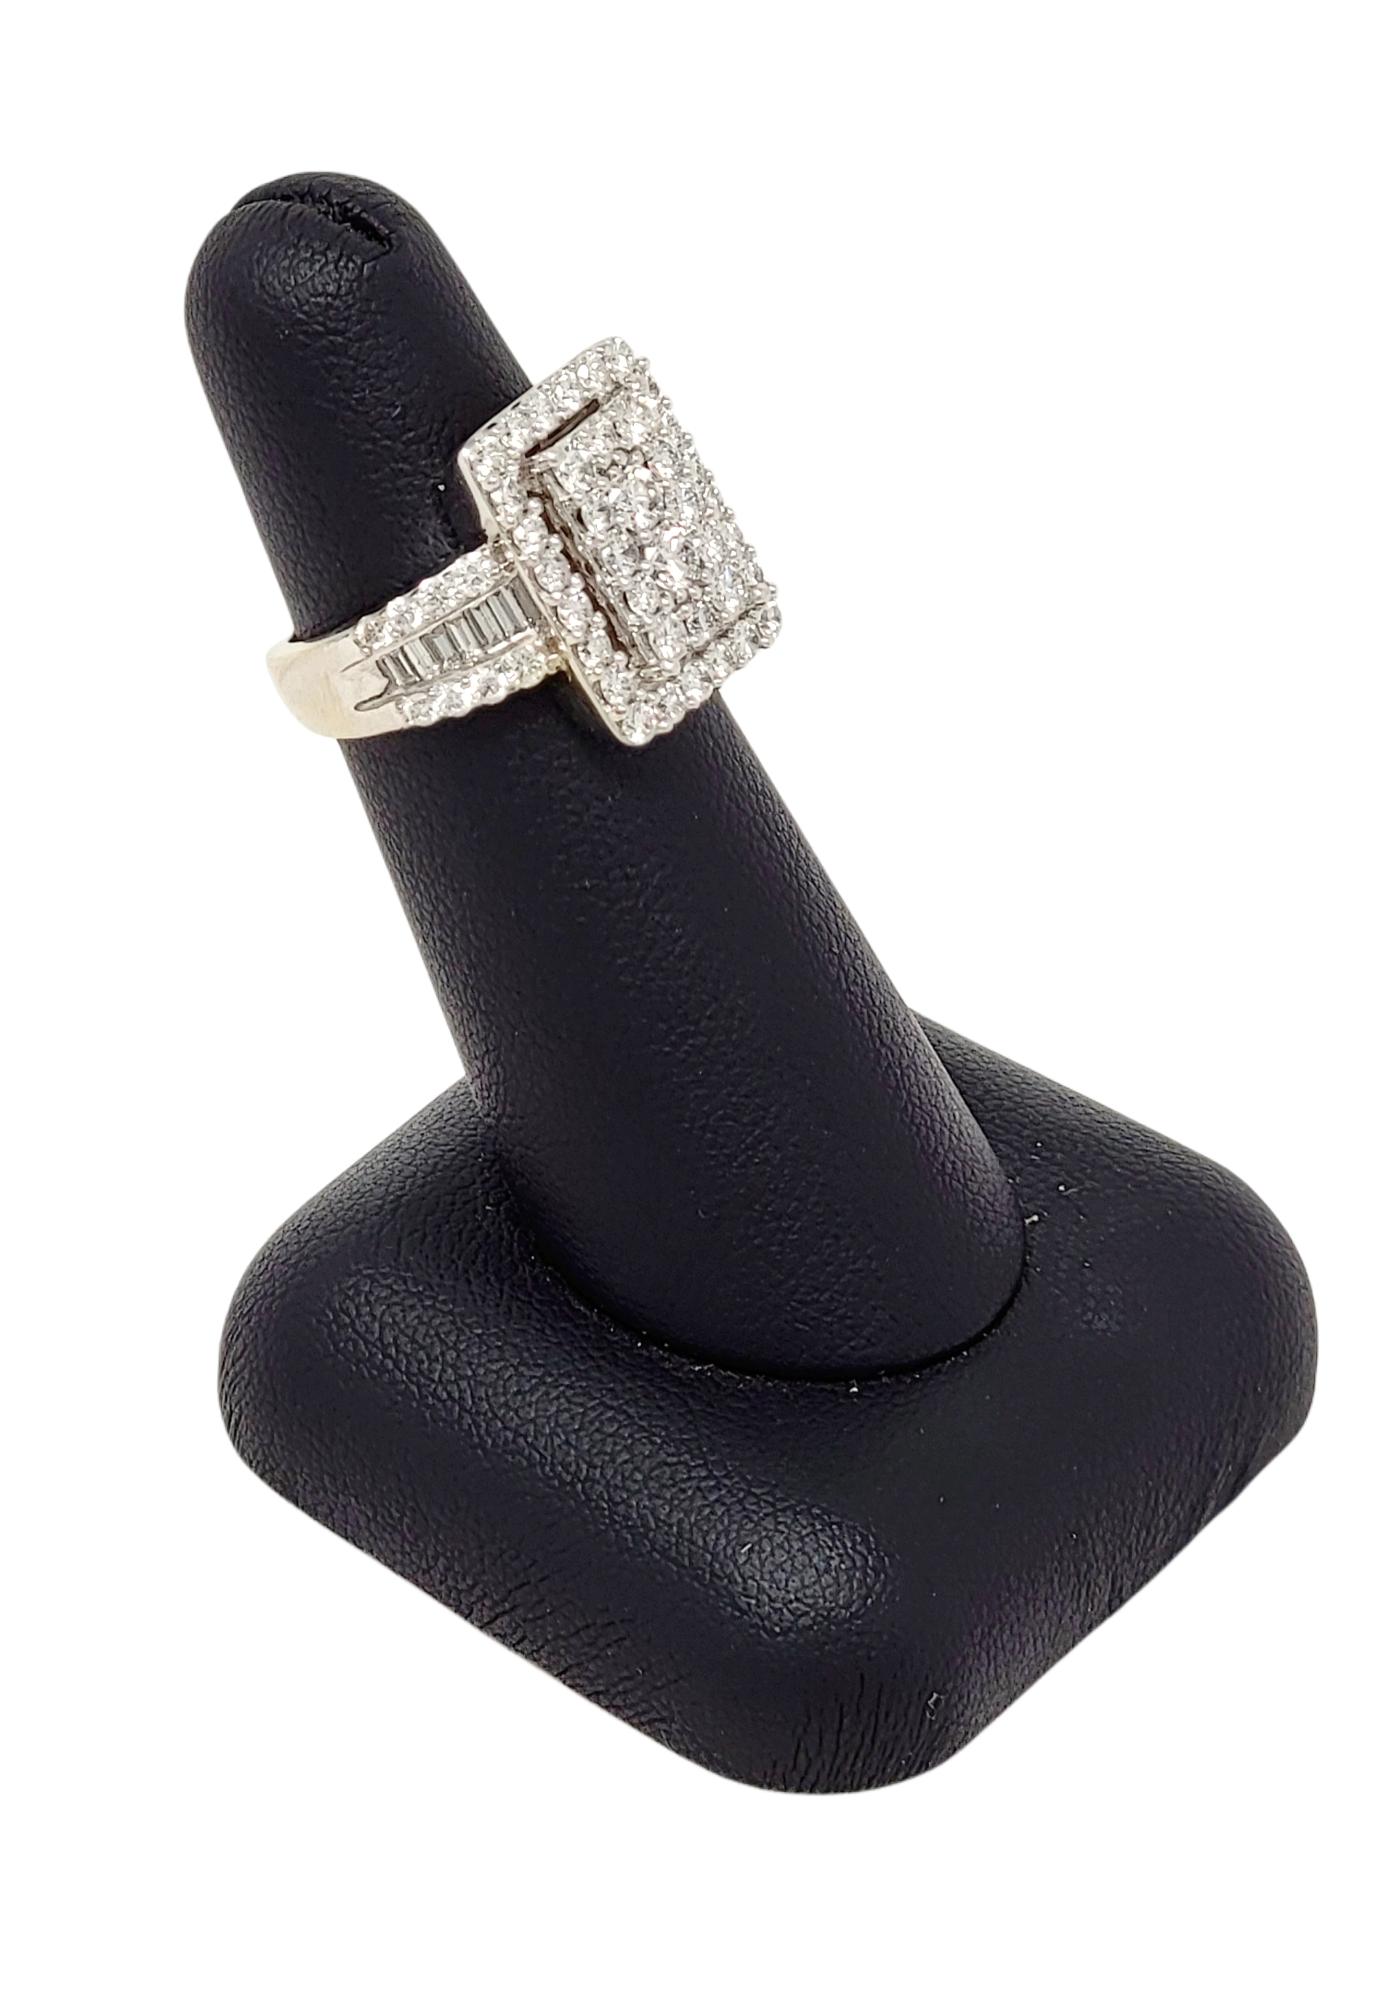 2.50 Carat Total Round Cut Diamond Rectangular Halo Ring in 14 Karat White Gold For Sale 1